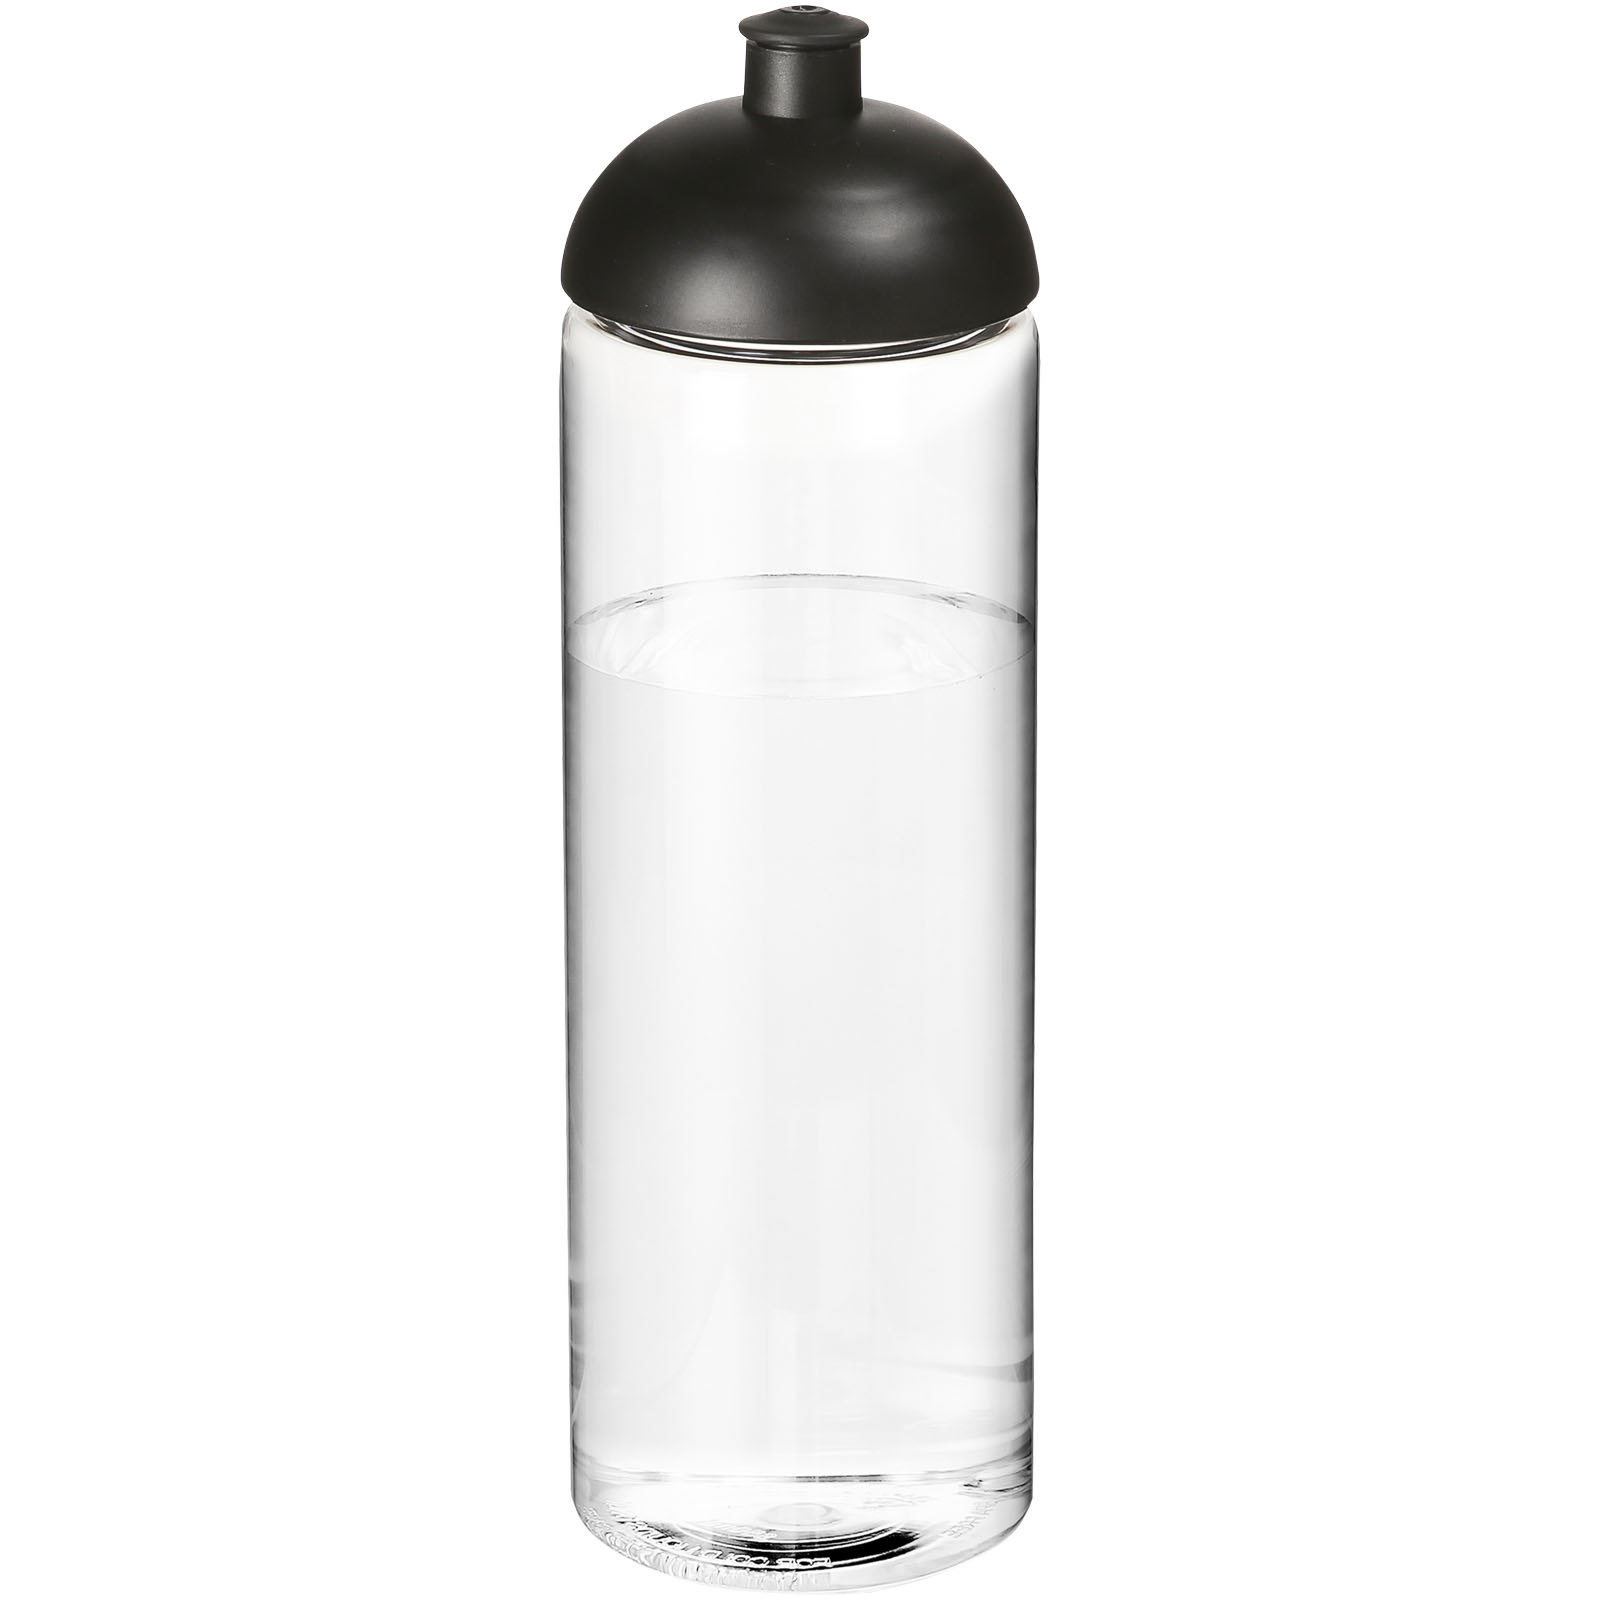 Botella de agua deportiva de pico recto - Middlewich - Iznatoraf